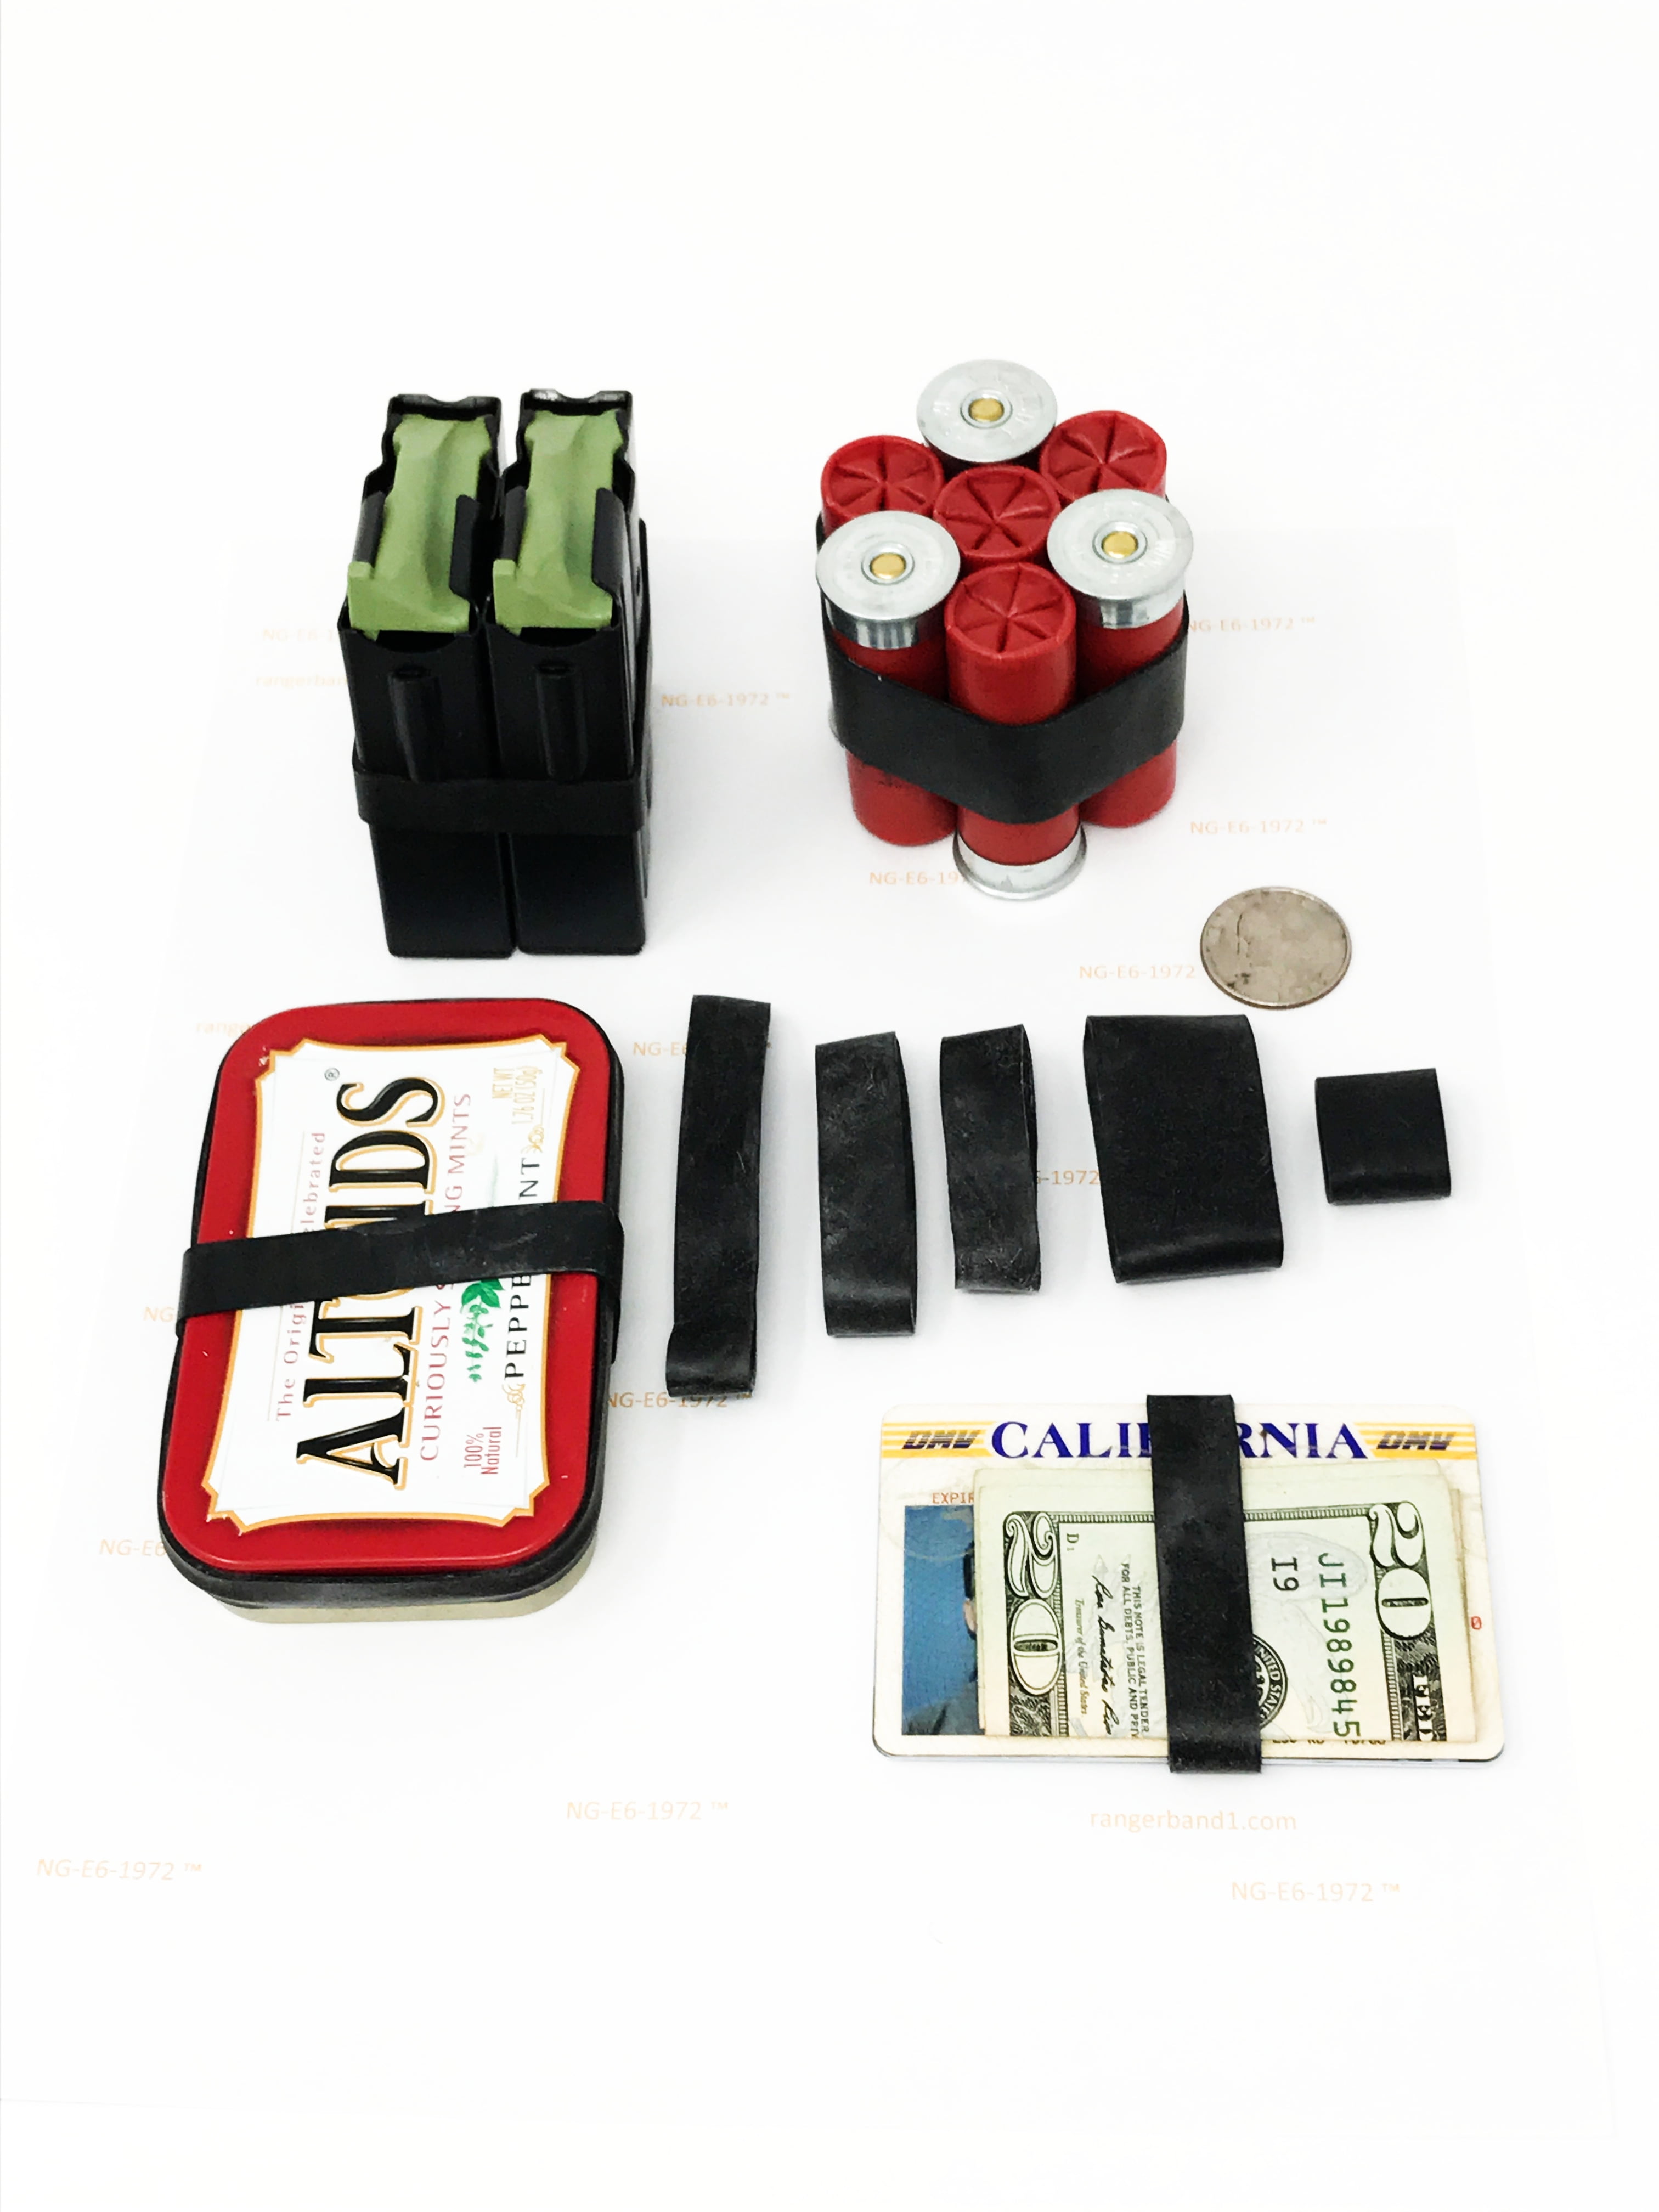 acheter X Band rubber 6 Small (pack de 5) - Rangement jeux de